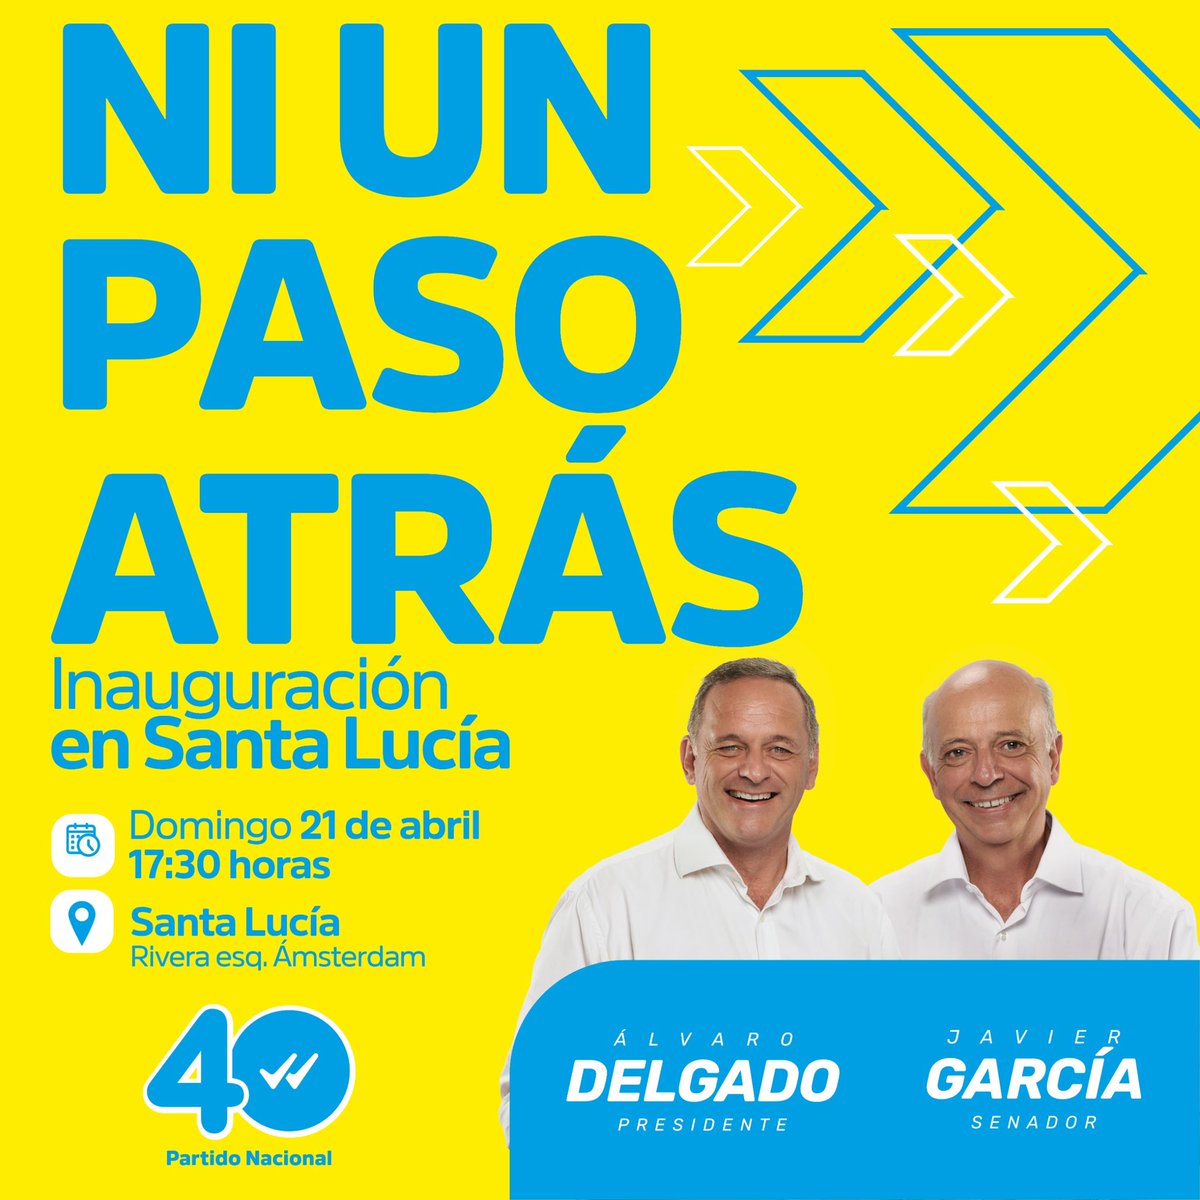 Mañana domingo inauguramos nueva #Casa40 en Santa Lucía, Canelones #NiUnPasoAtras